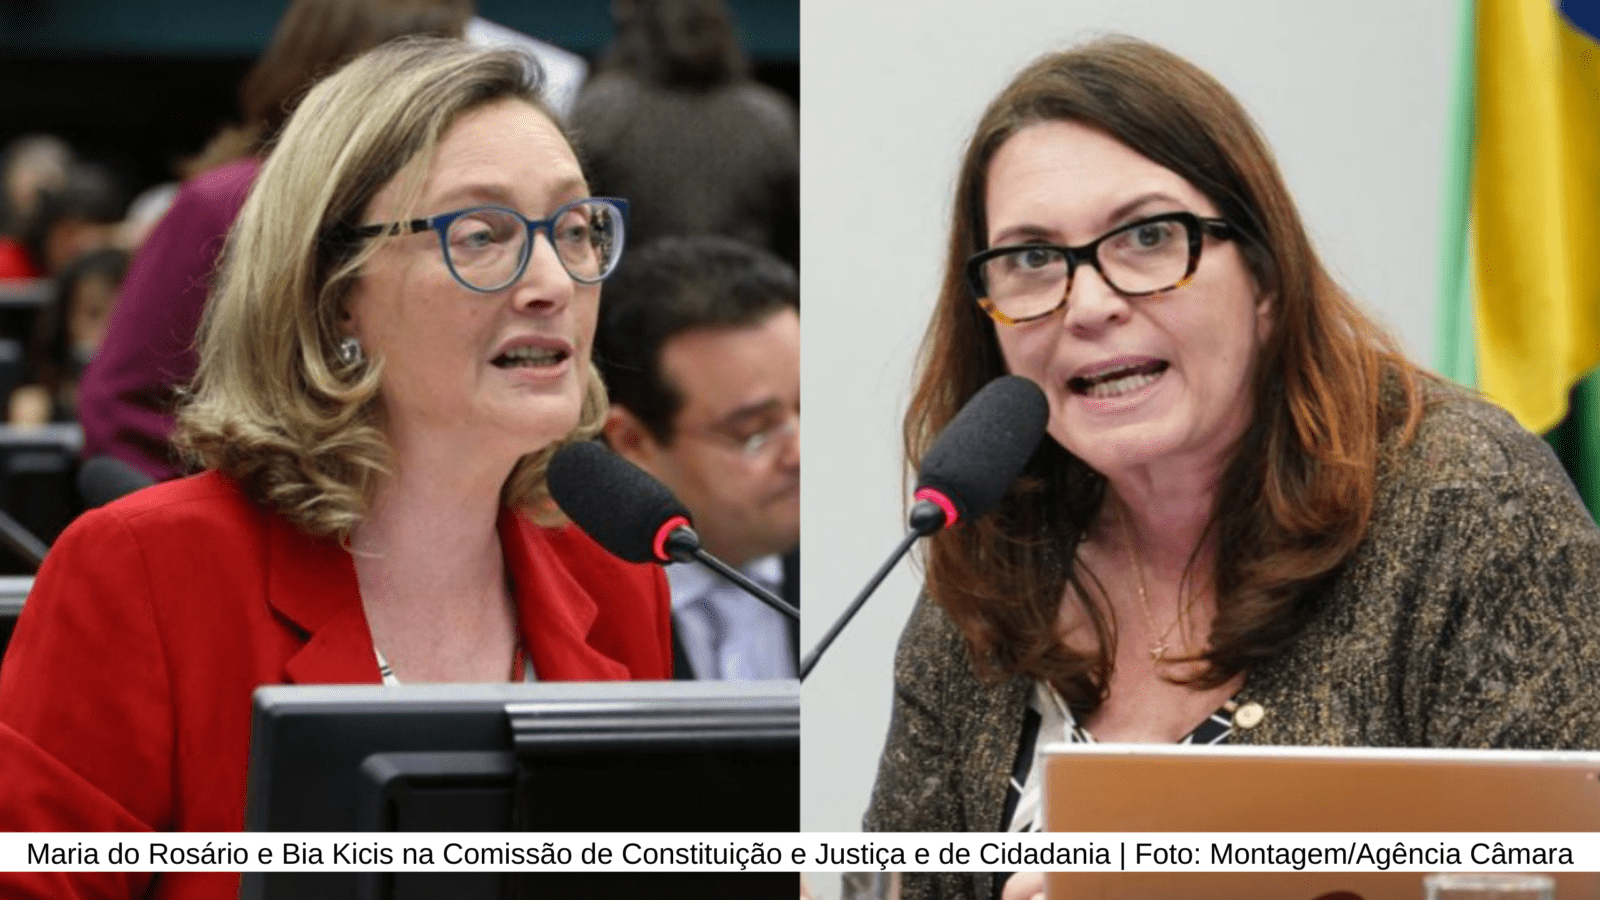 Maria do Rosário e Bia Kicis na Comissão de Constituição e Justiça e de Cidadania | Foto: Montagem/Agência Câmara